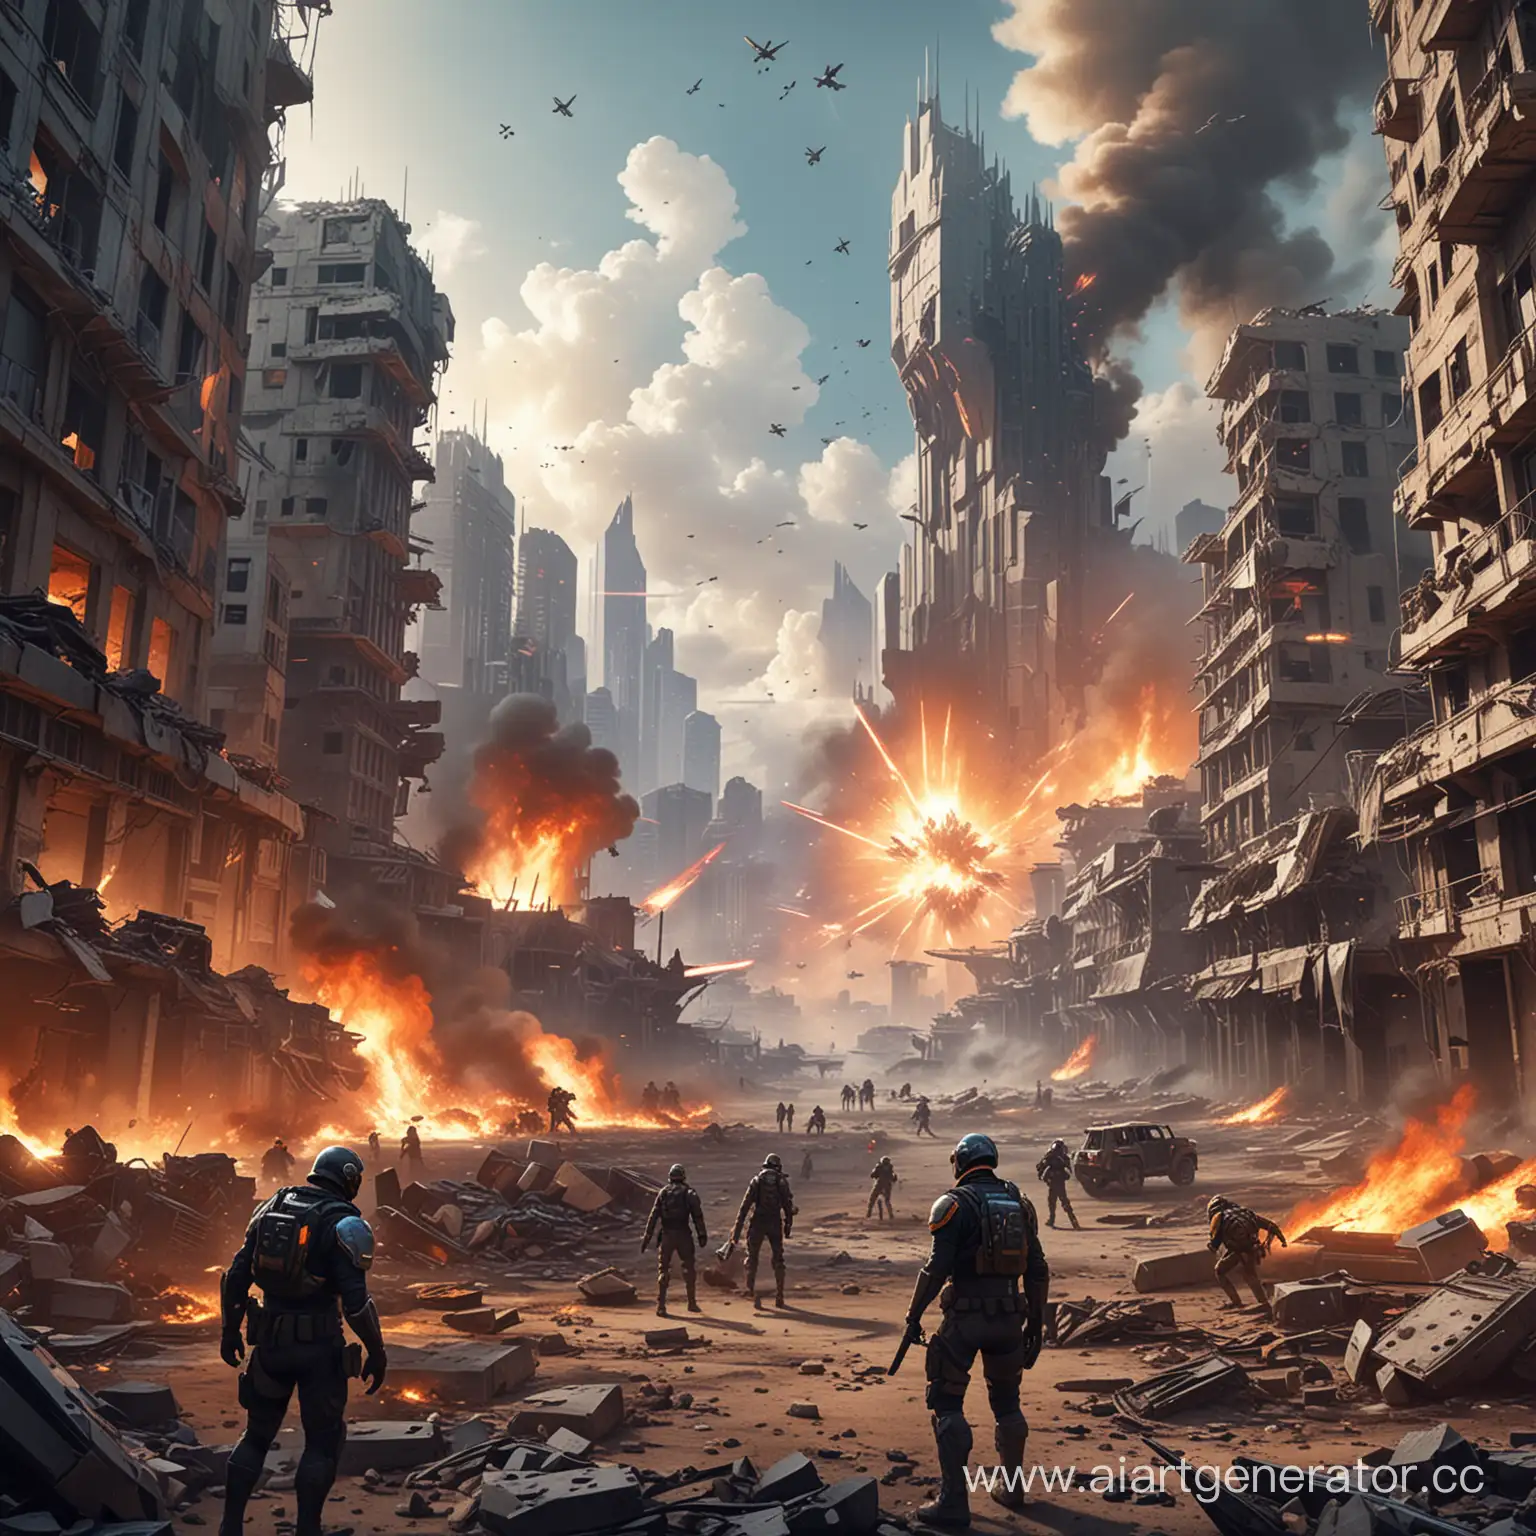 Иллюстрация сражения между агентами Valorant и силами Радиант на фоне разрушенного города или технологического комплекса, чтобы показать масштаб конфликта.
